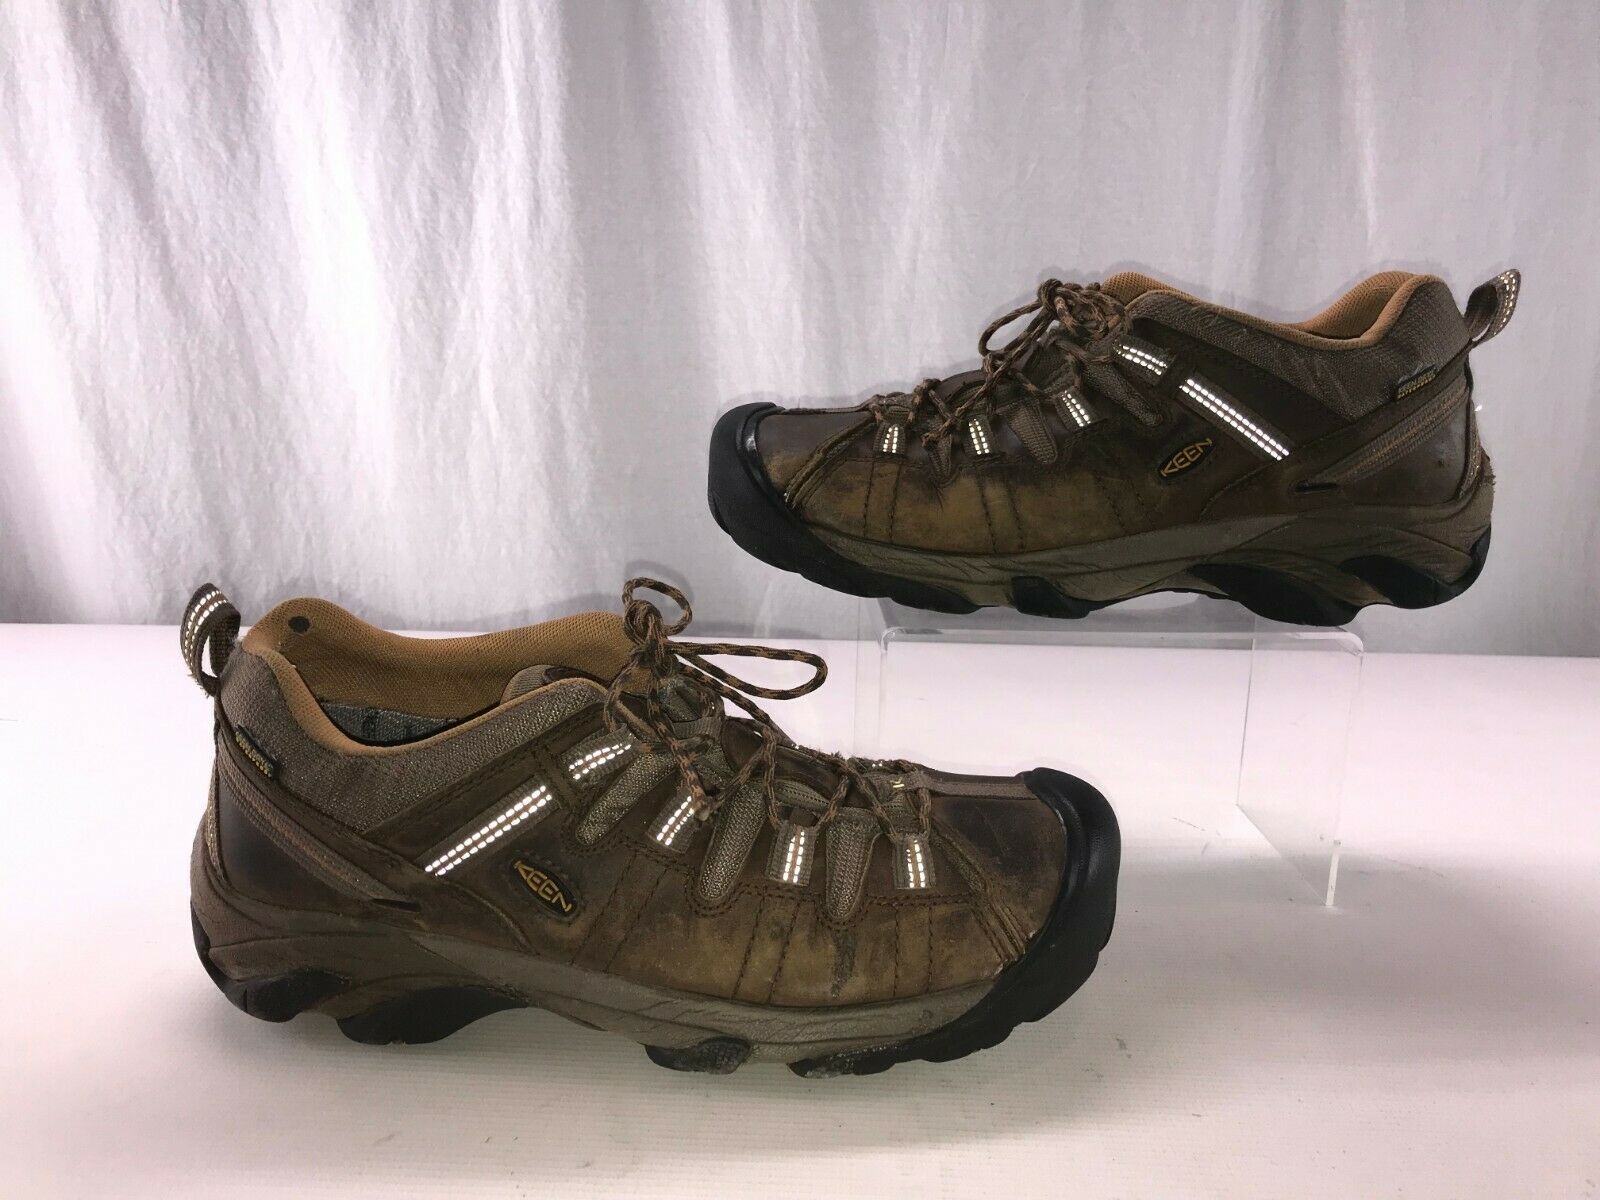 KEEN 1010125 Men's Targhee II Hiking Waterproof Nubuck Leather Shoe Size 12